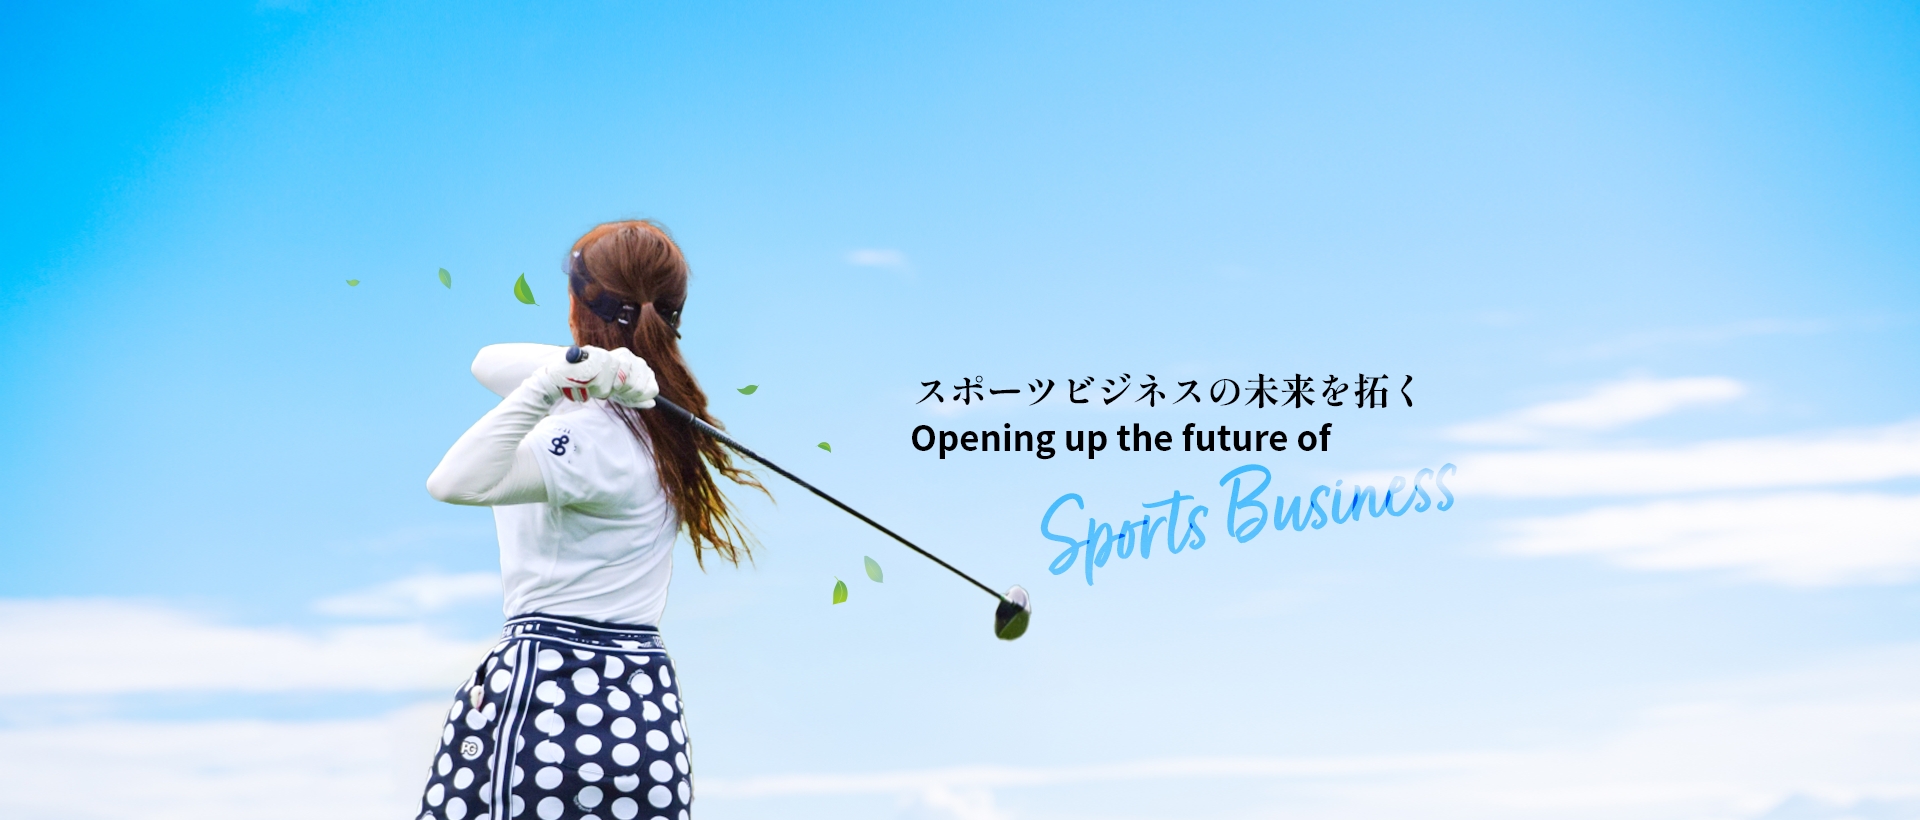 スポーツビジネスの未来を拓く - Opening up the future of Sports Business